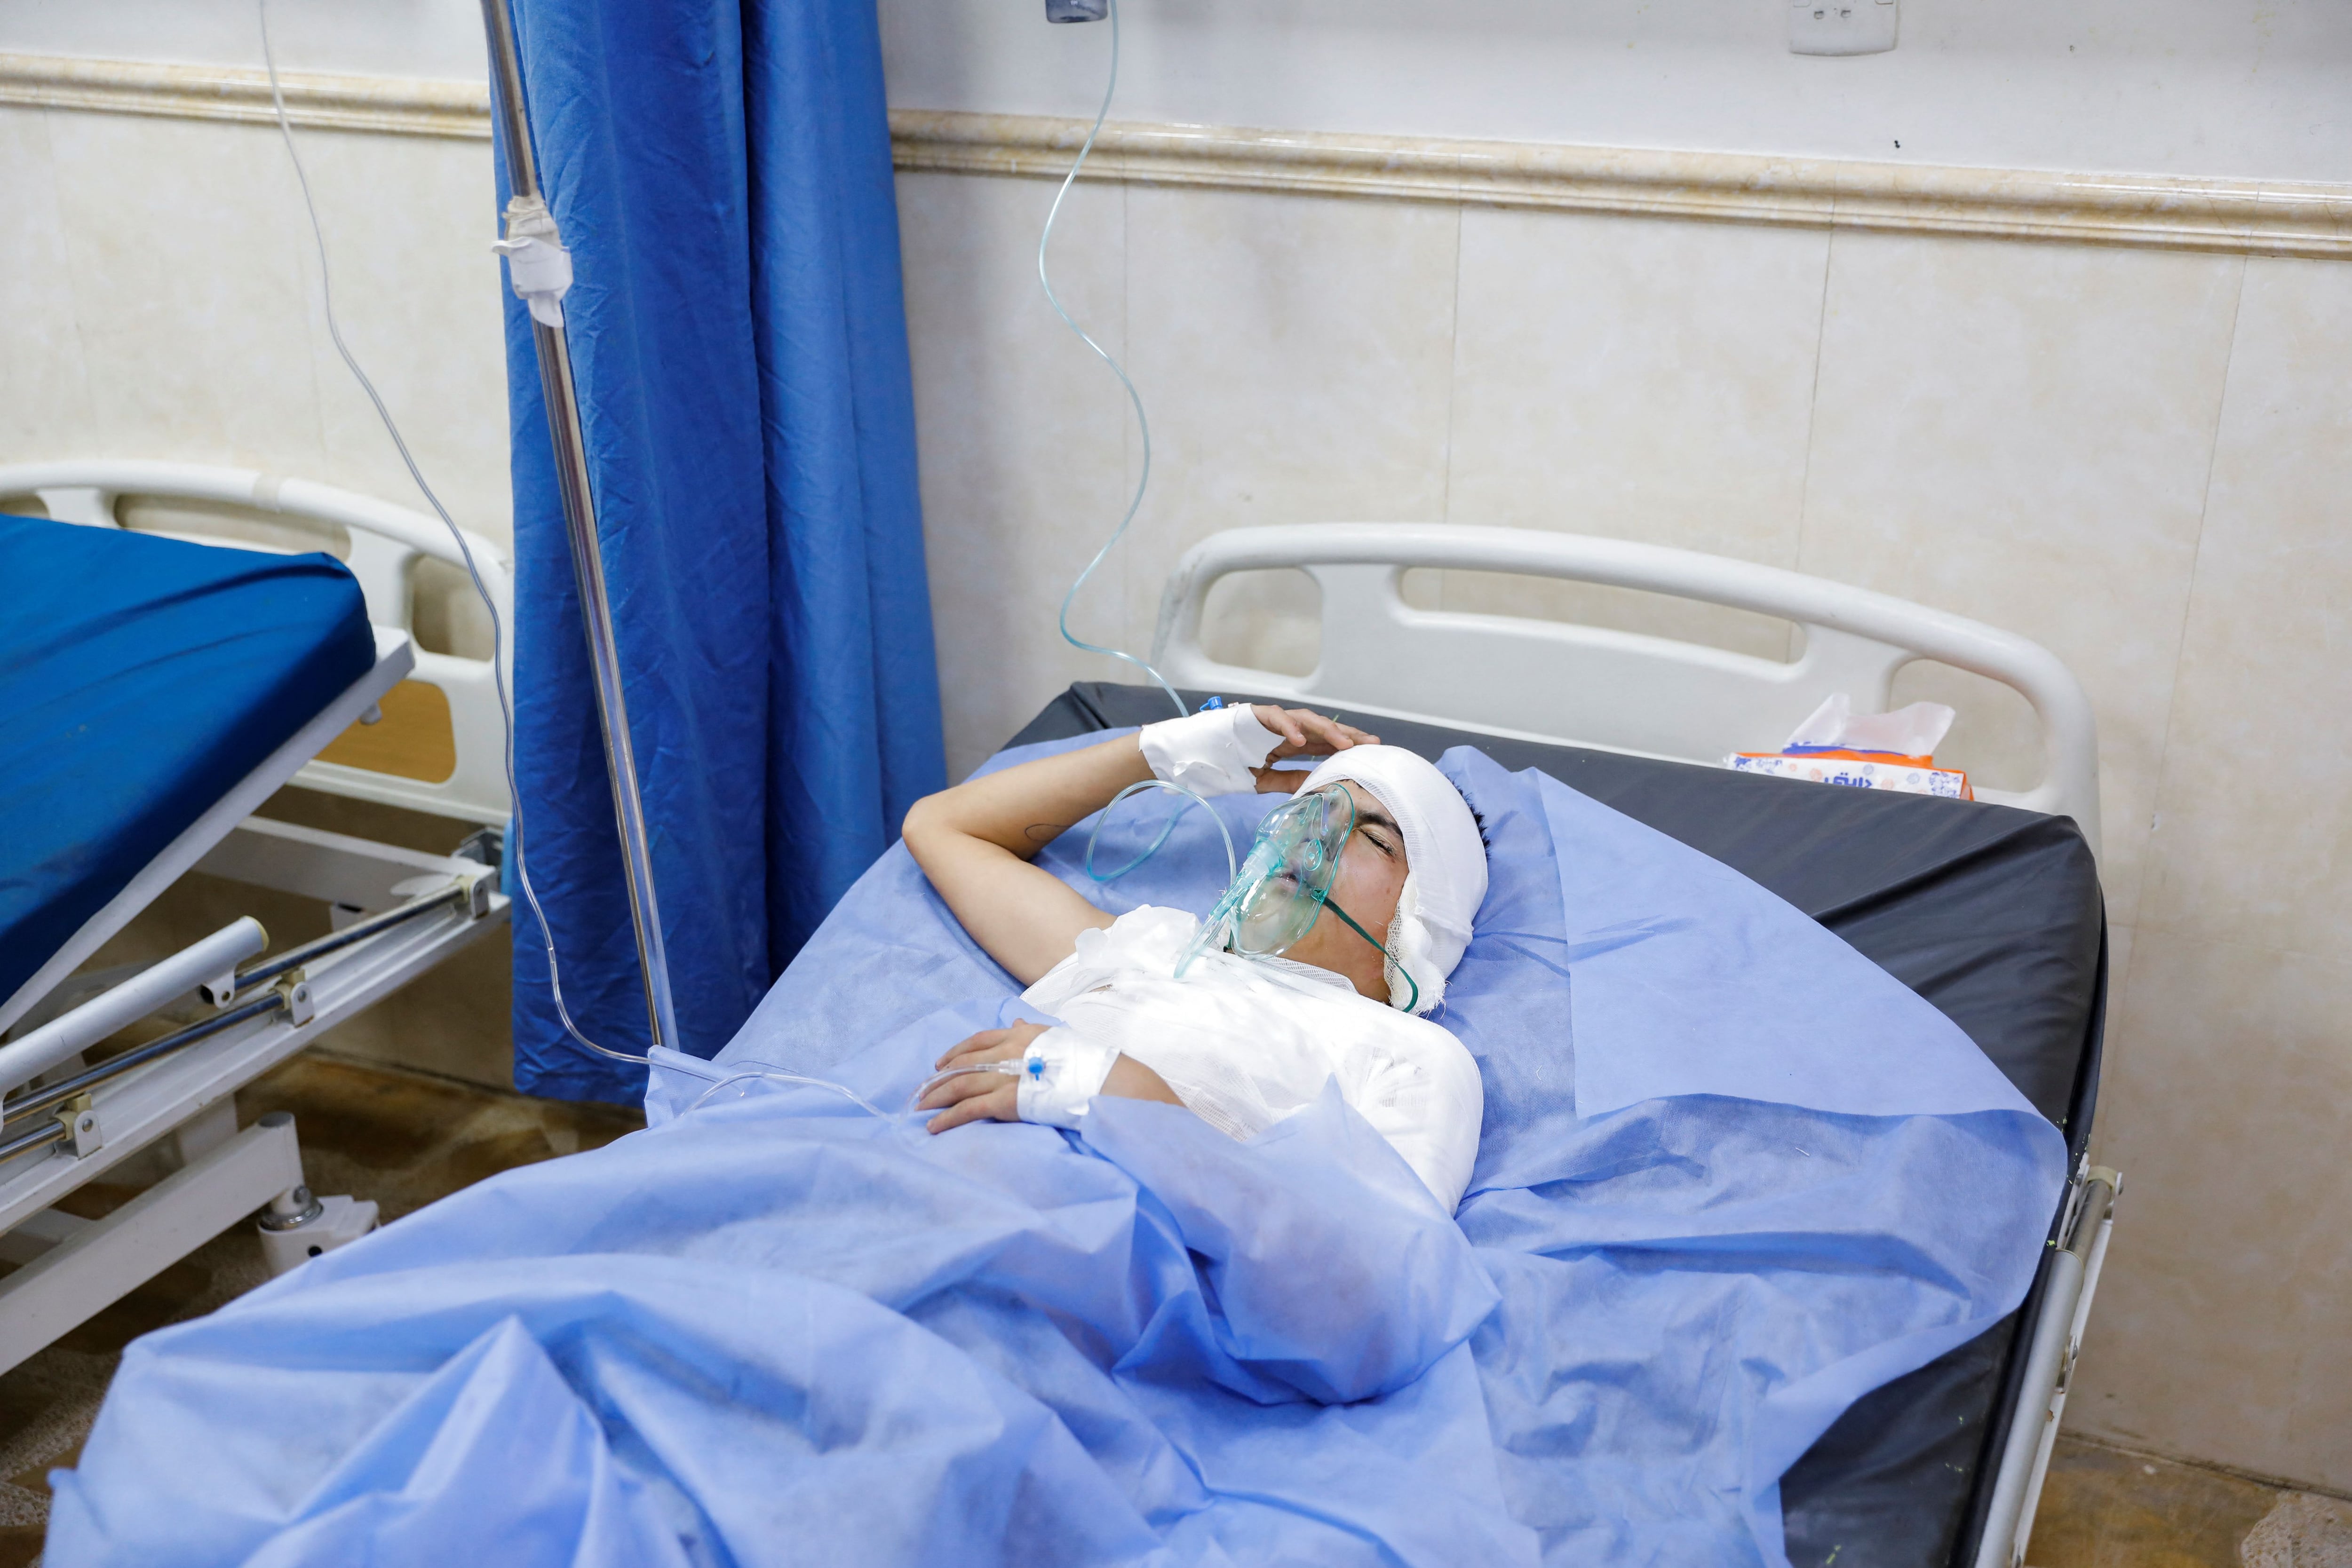 Una víctima del incendio yace en un hospital tras un incendio mortal en la celebración de una boda en el distrito de Hamdaniya, en la provincia iraquí de Nínive, Irak, 27 de septiembre de 2023. REUTERS/Abdullah Rashid